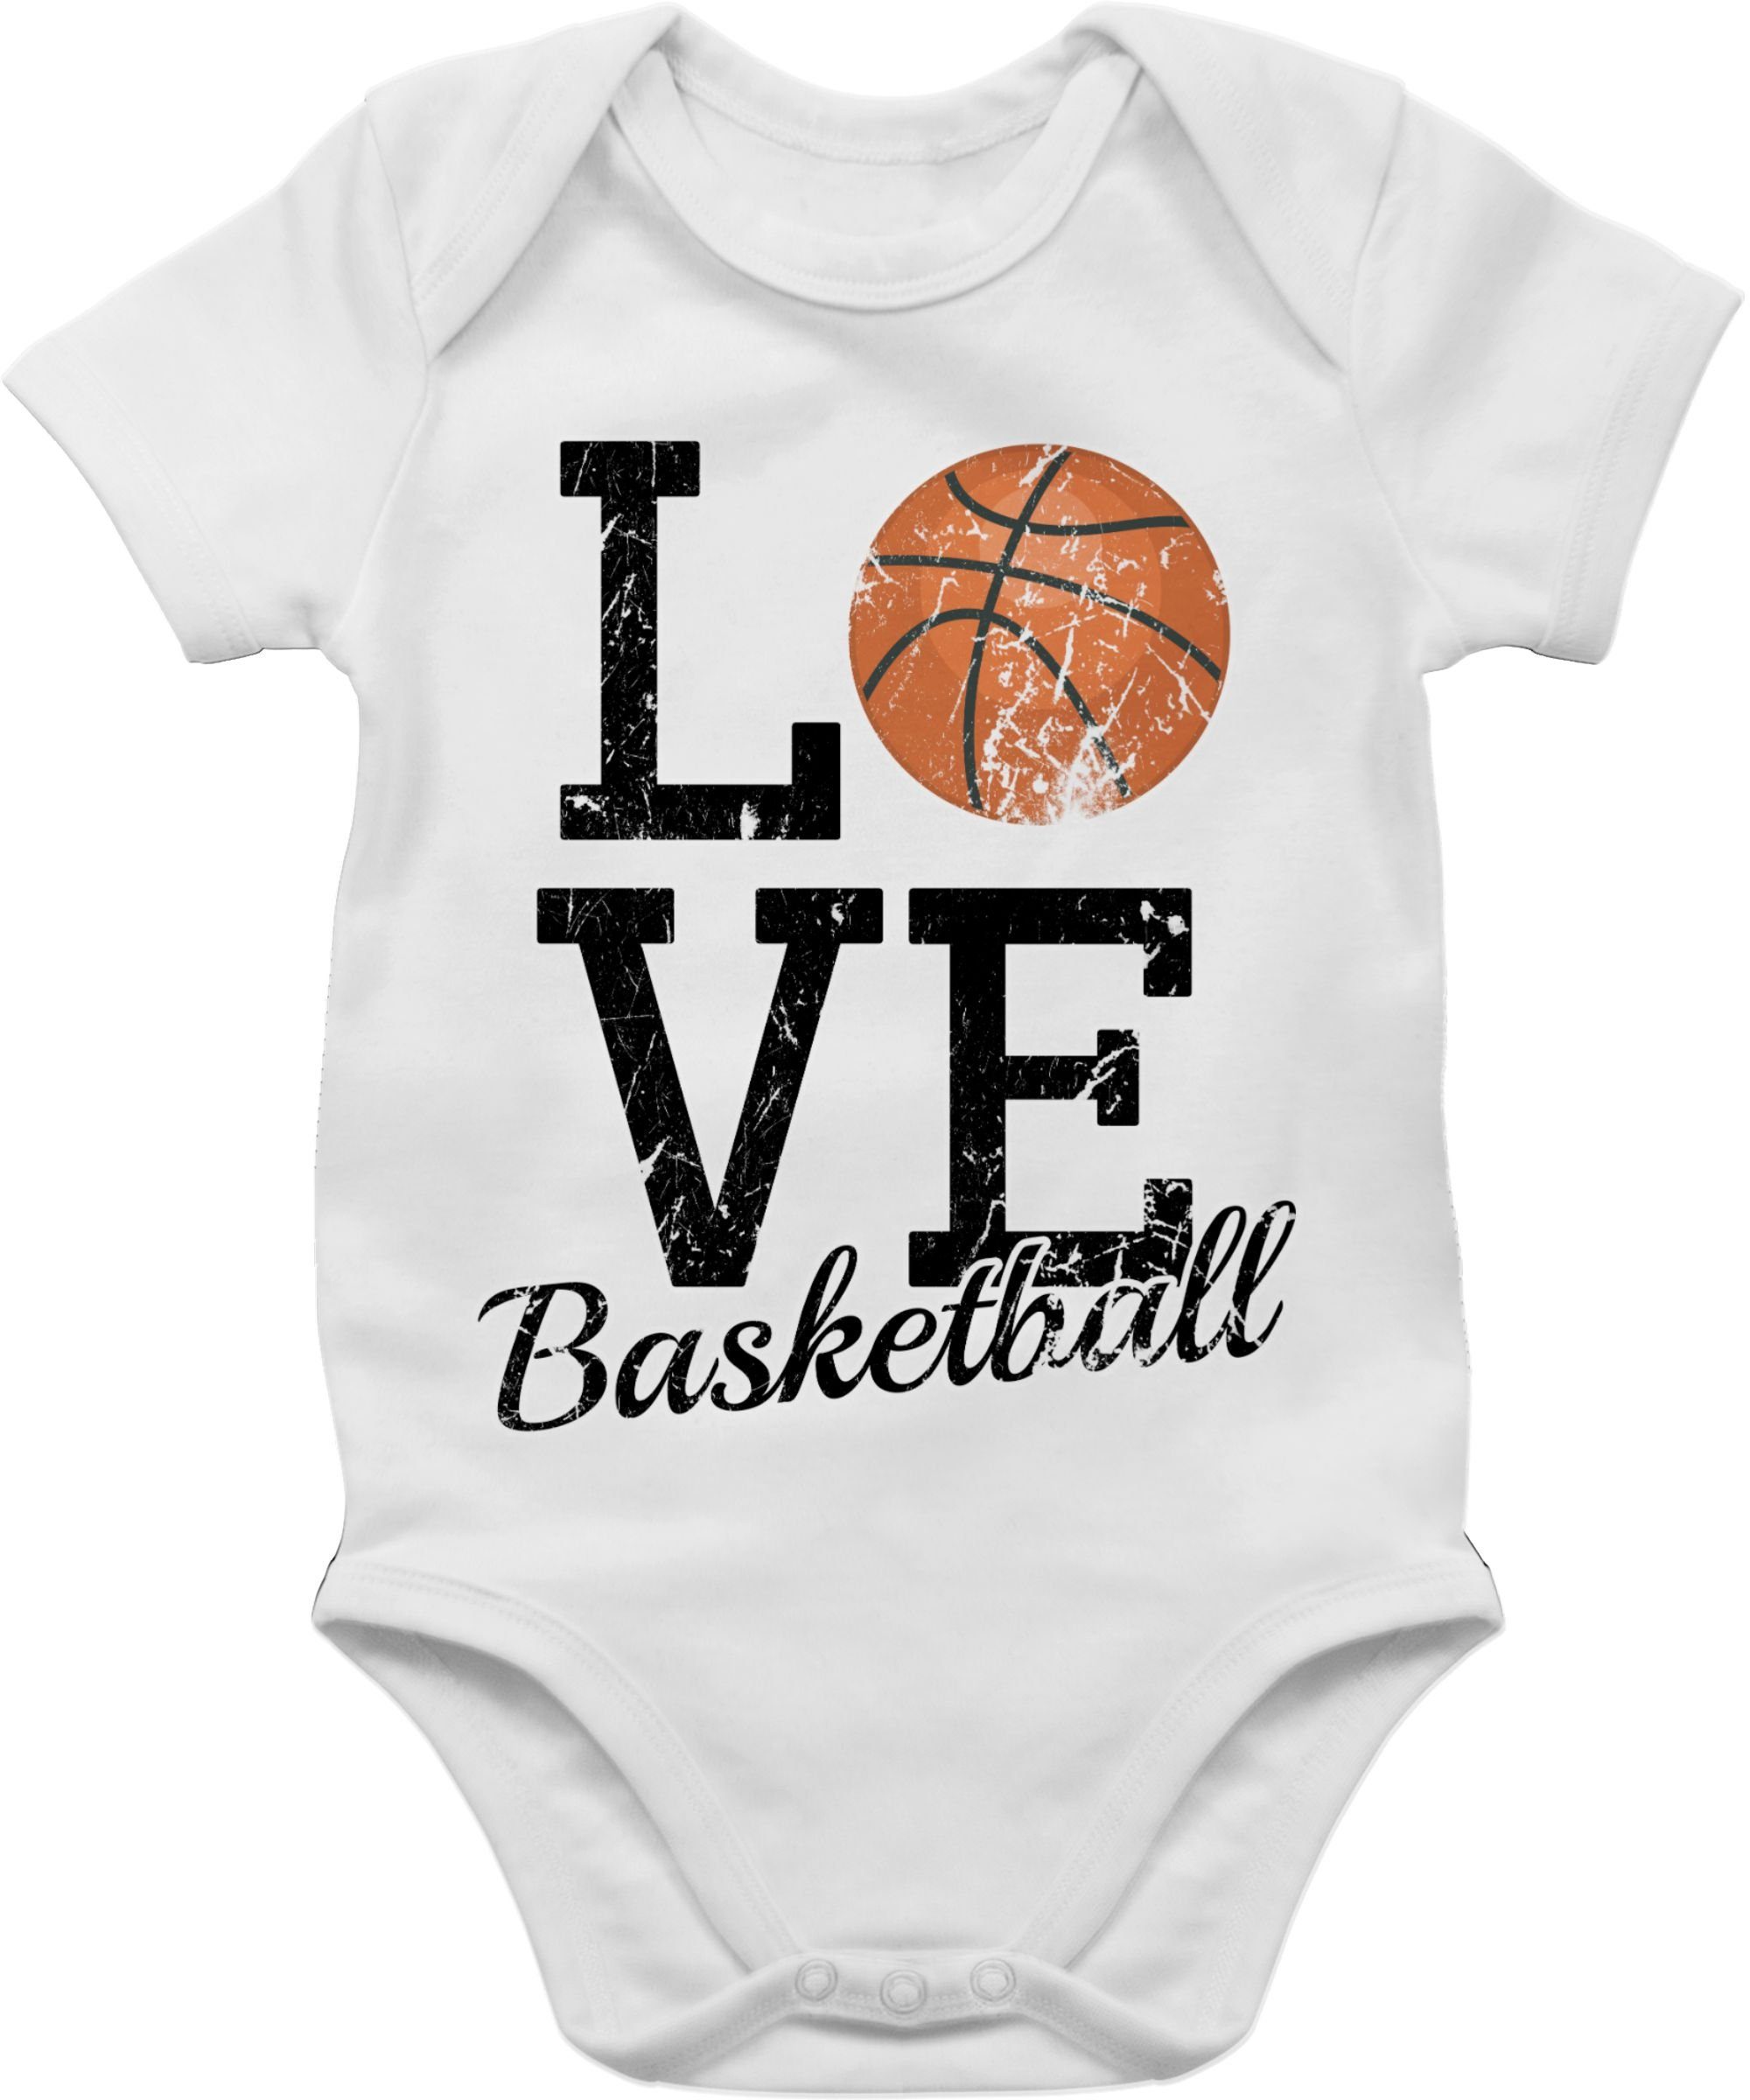 Shirtracer Shirtbody Baby Love 1 Sport Bewegung & Weiß Basketball